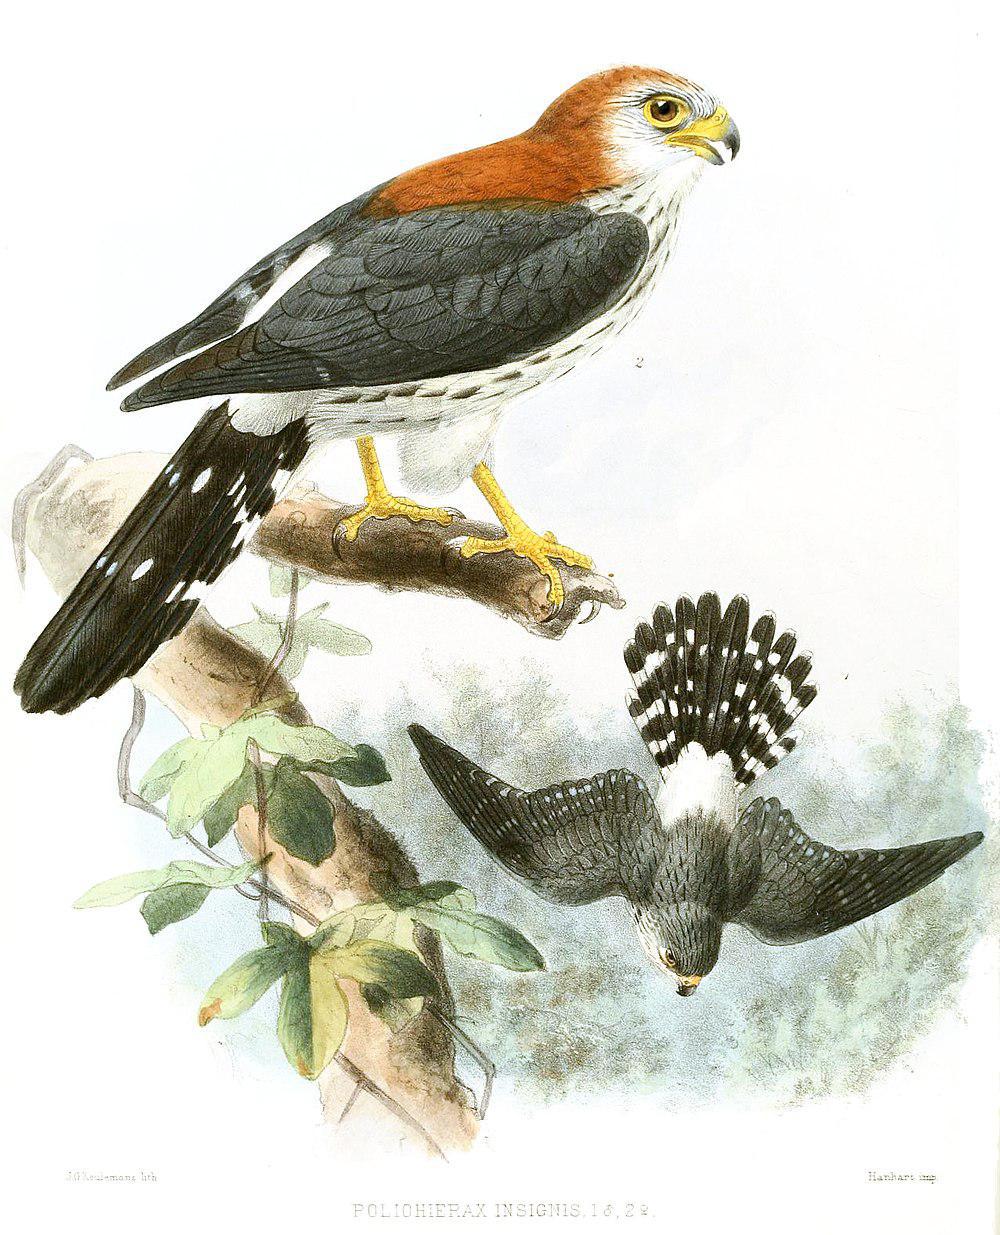 白腰侏隼 / White-rumped Falcon / Polihierax insignis